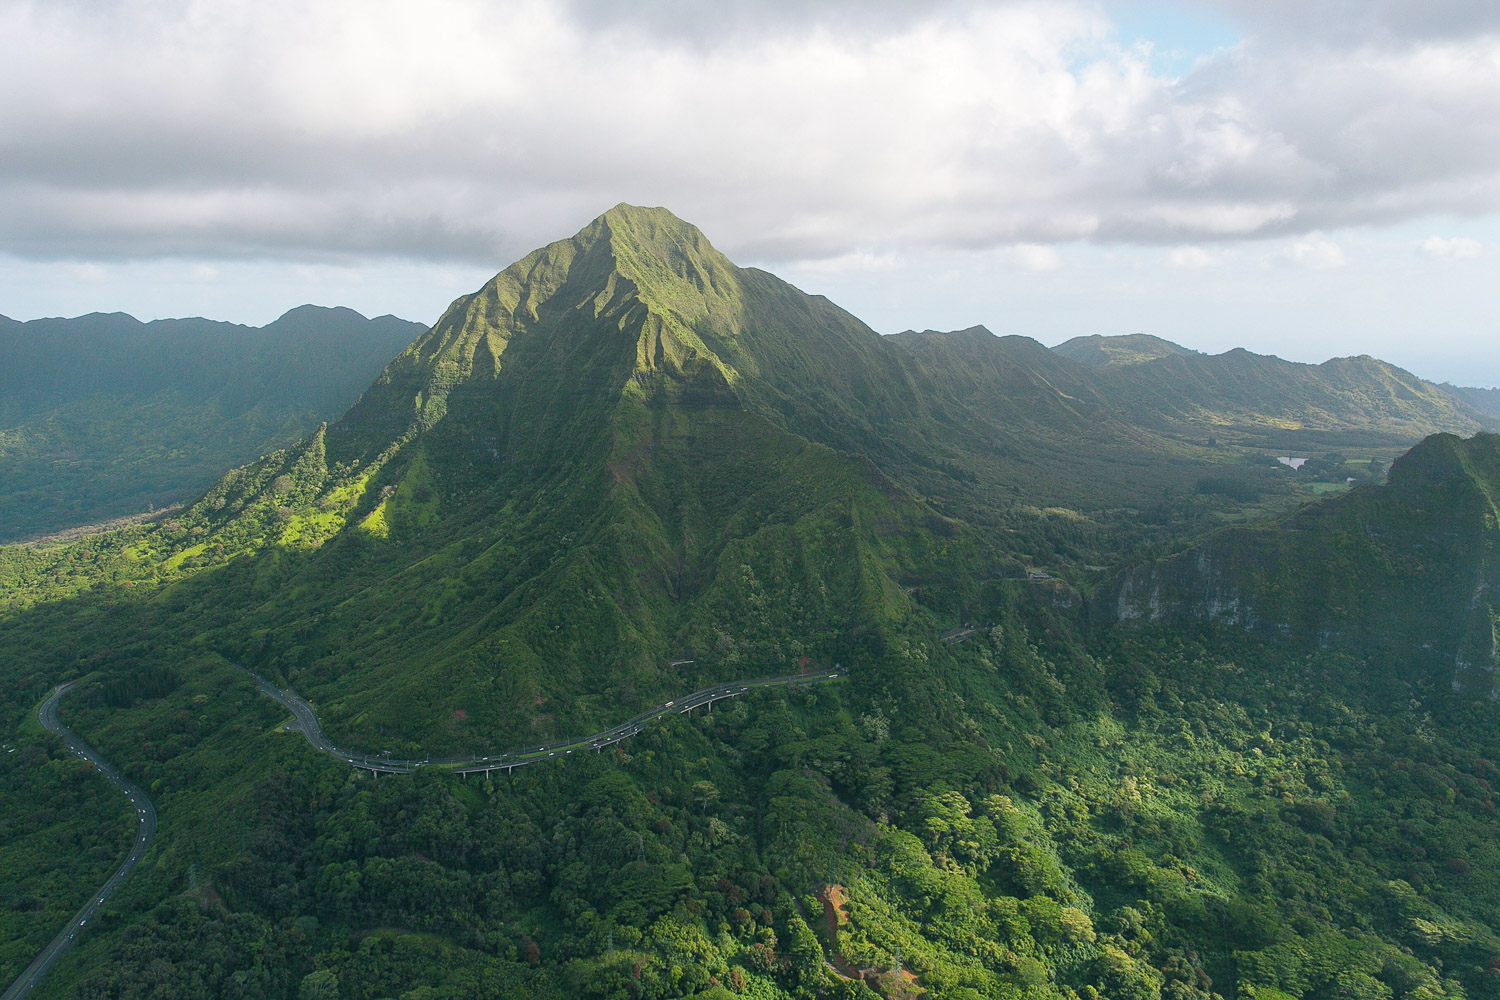 The Ko'olau Mountains on Oahu, Hawaii